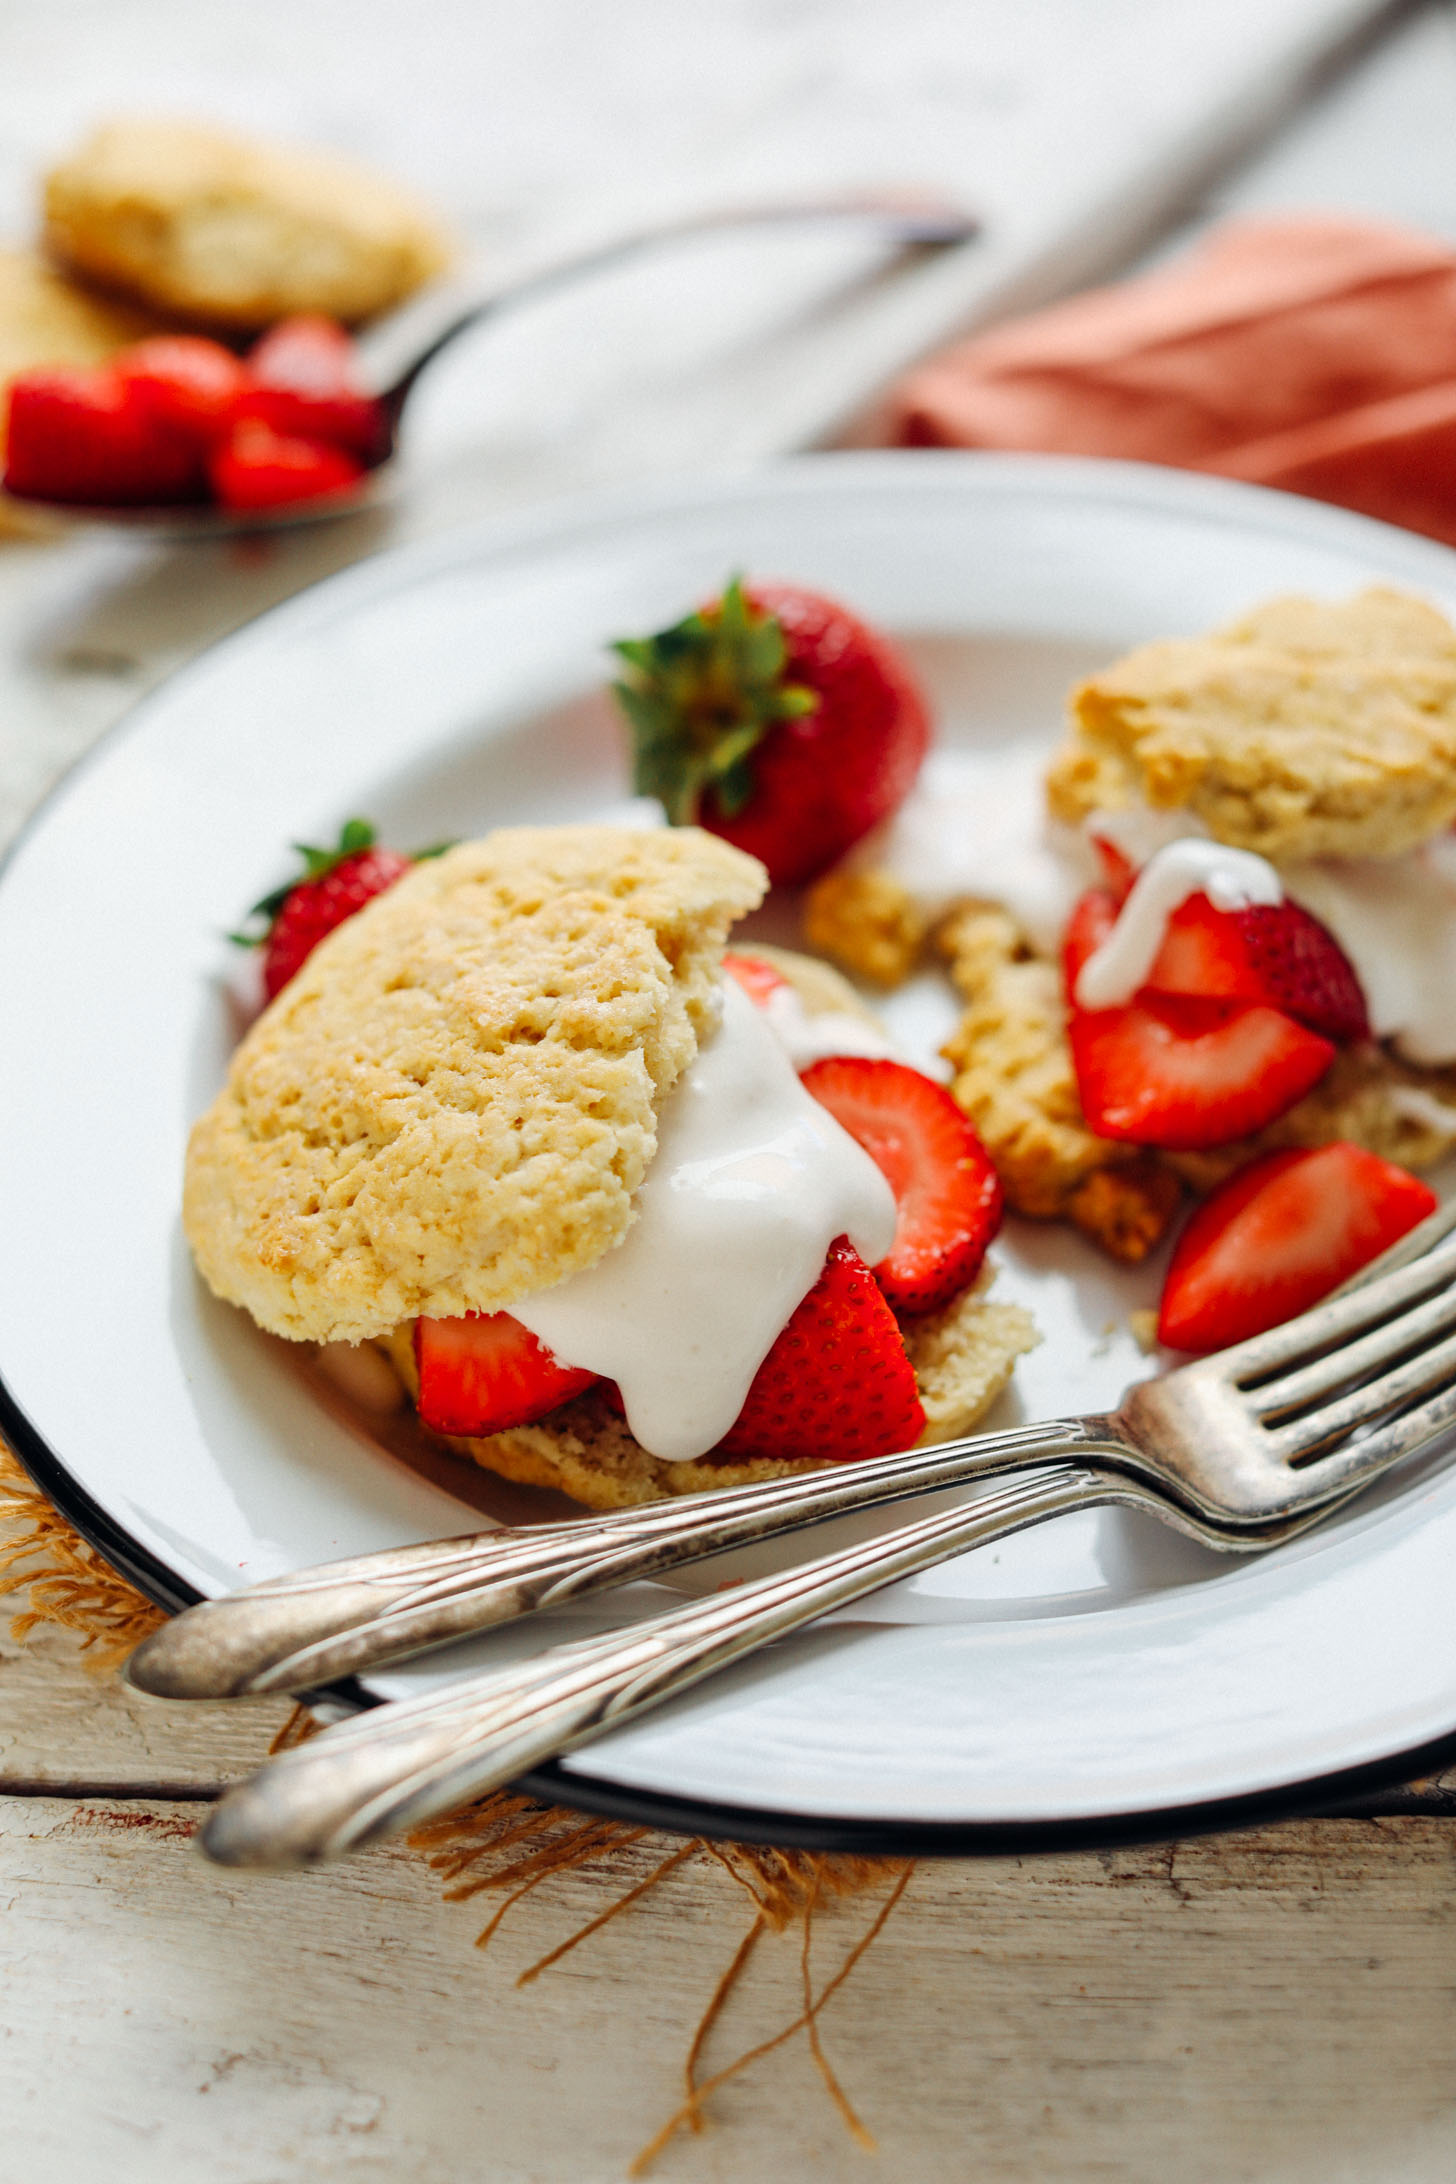 AMAZING Vegan GF Strawberry Shortcake! 30 min, 10 Ingred., SO fluffy + tender! #vegan #glutenfree #shortcake #recipe #minimalistbaker